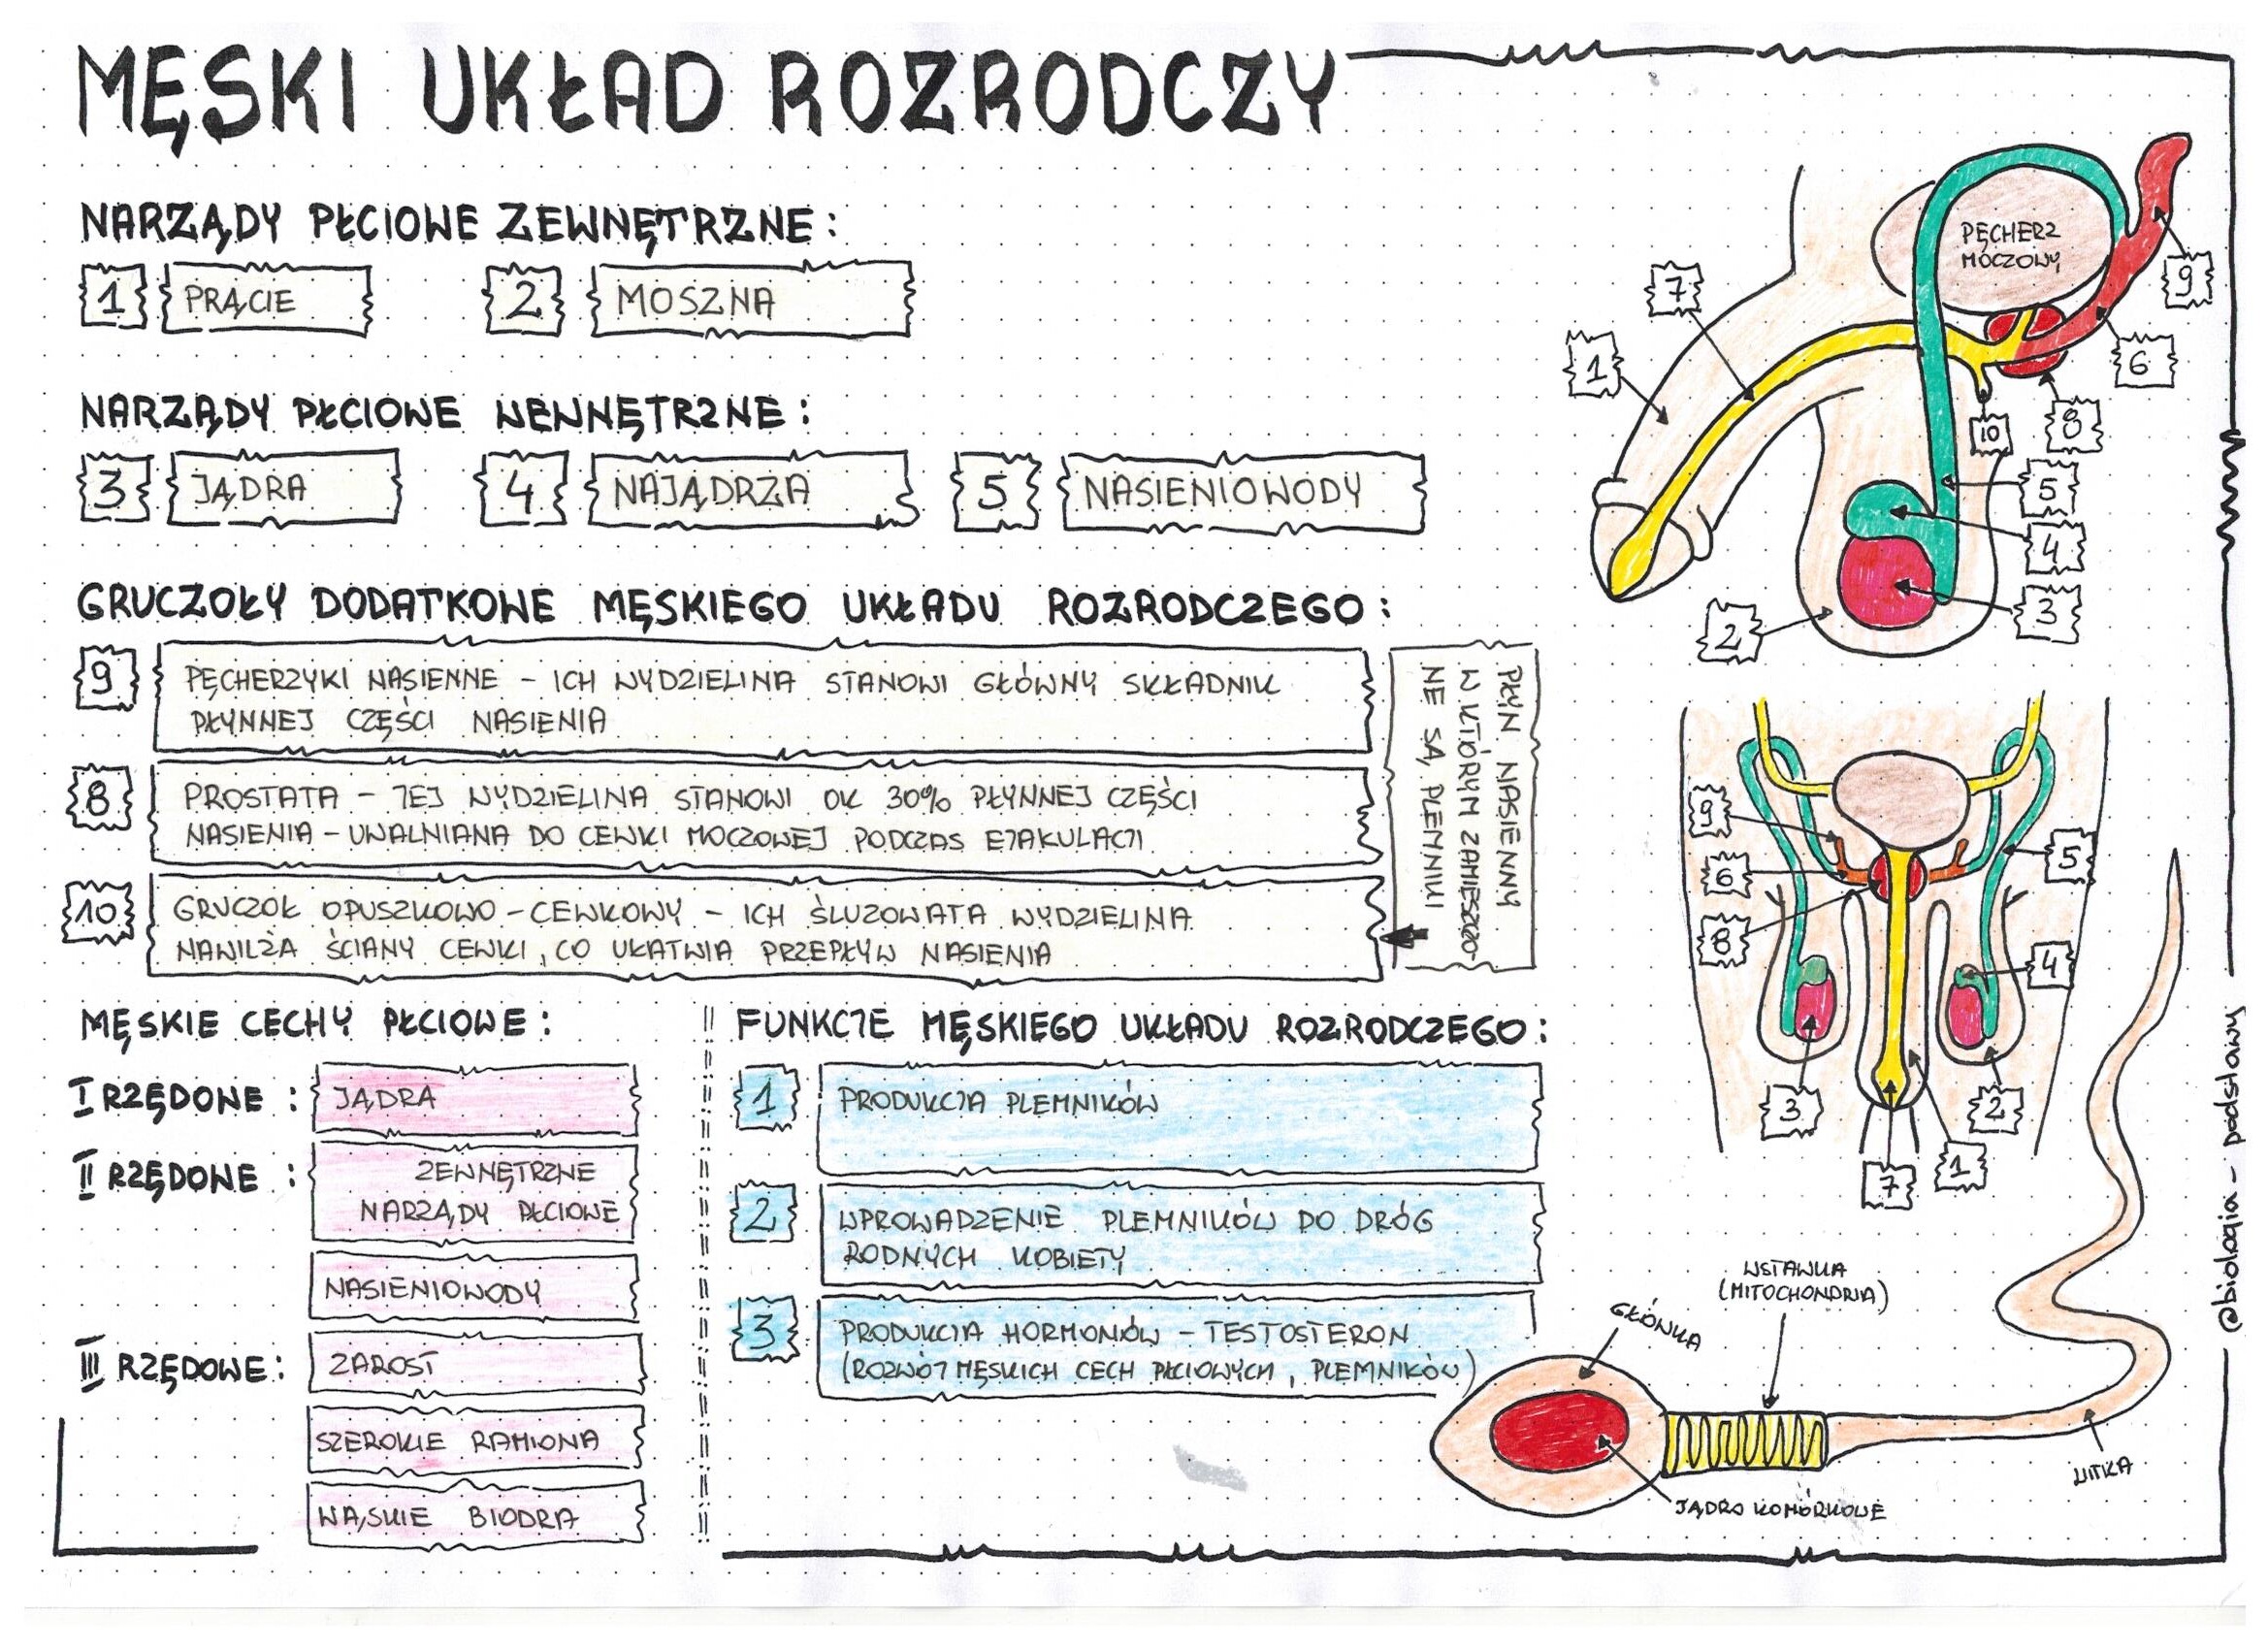 Biologia Klasa 7 Układ Rozrodczy Męski układ rozrodczy - anatomia - klasa 7 - kolorowa sketchnotka